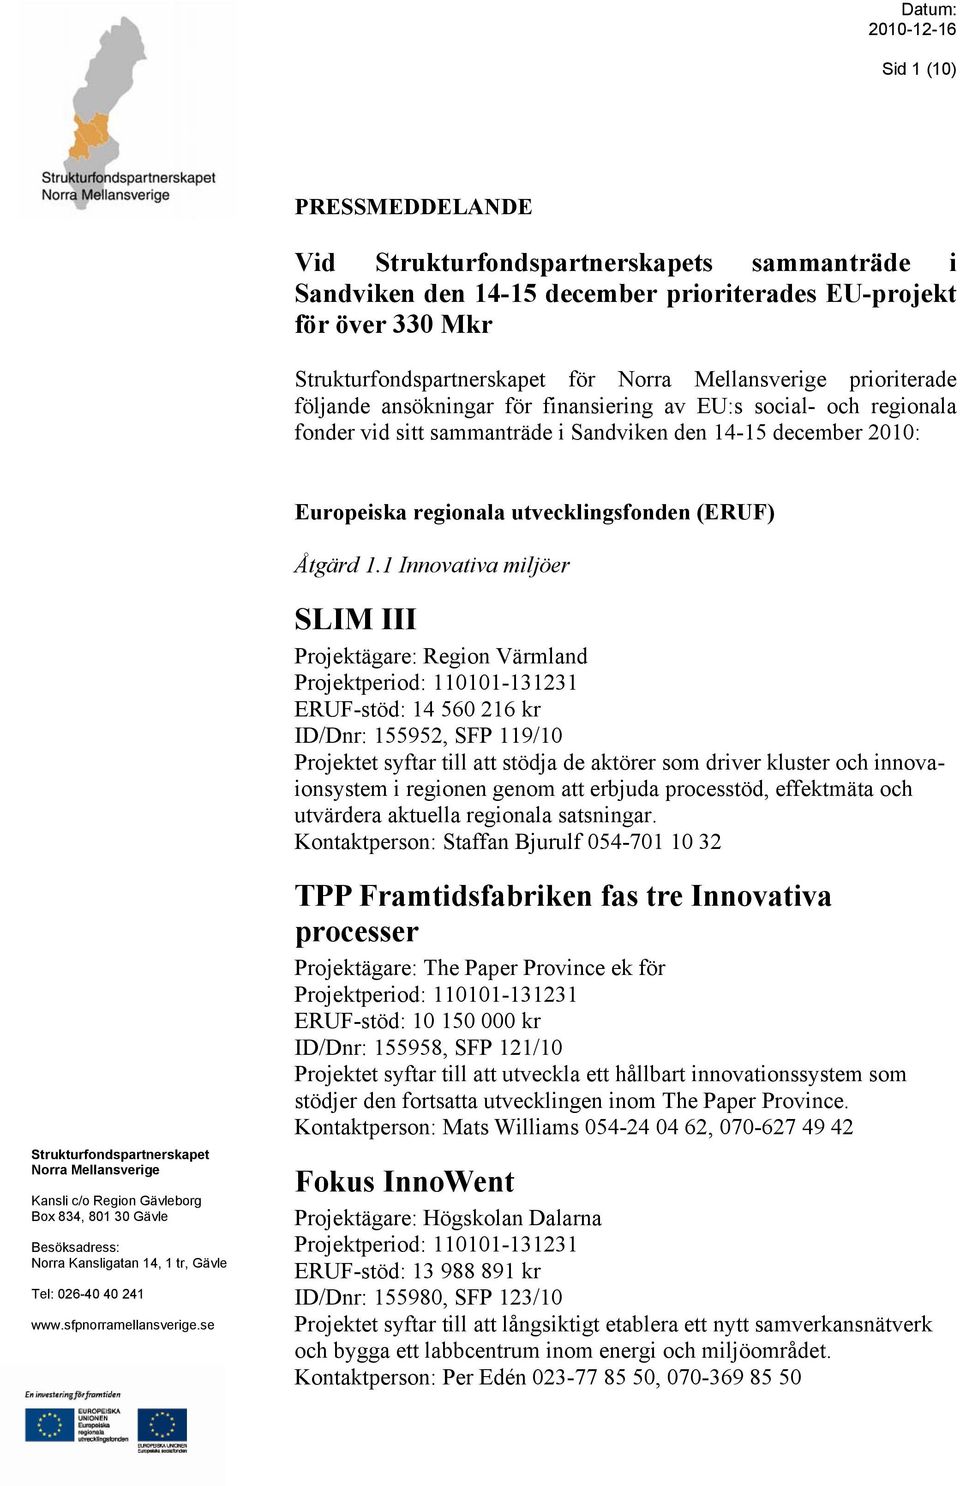 1 Innovativa miljöer SLIM III Projektägare: Region Värmland ERUF-stöd: 14 560 216 kr ID/Dnr: 155952, SFP 119/10 Projektet syftar till att stödja de aktörer som driver kluster och innovaionsystem i